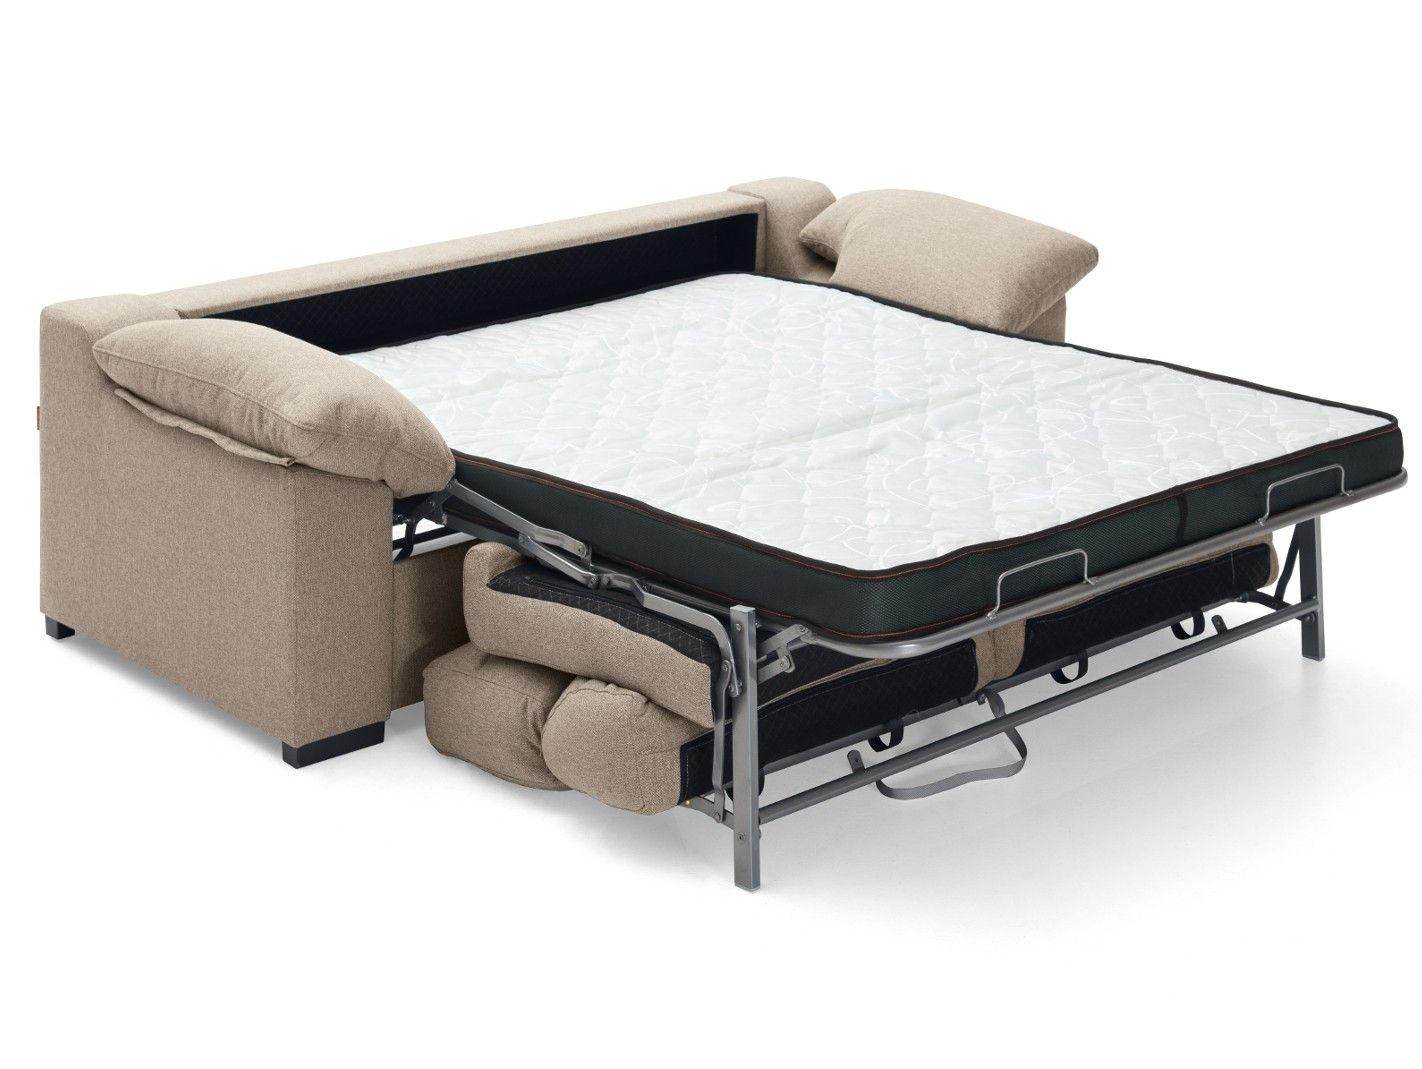 Sillón cama sistema de apertura extensible tapizado beige Merkamueble